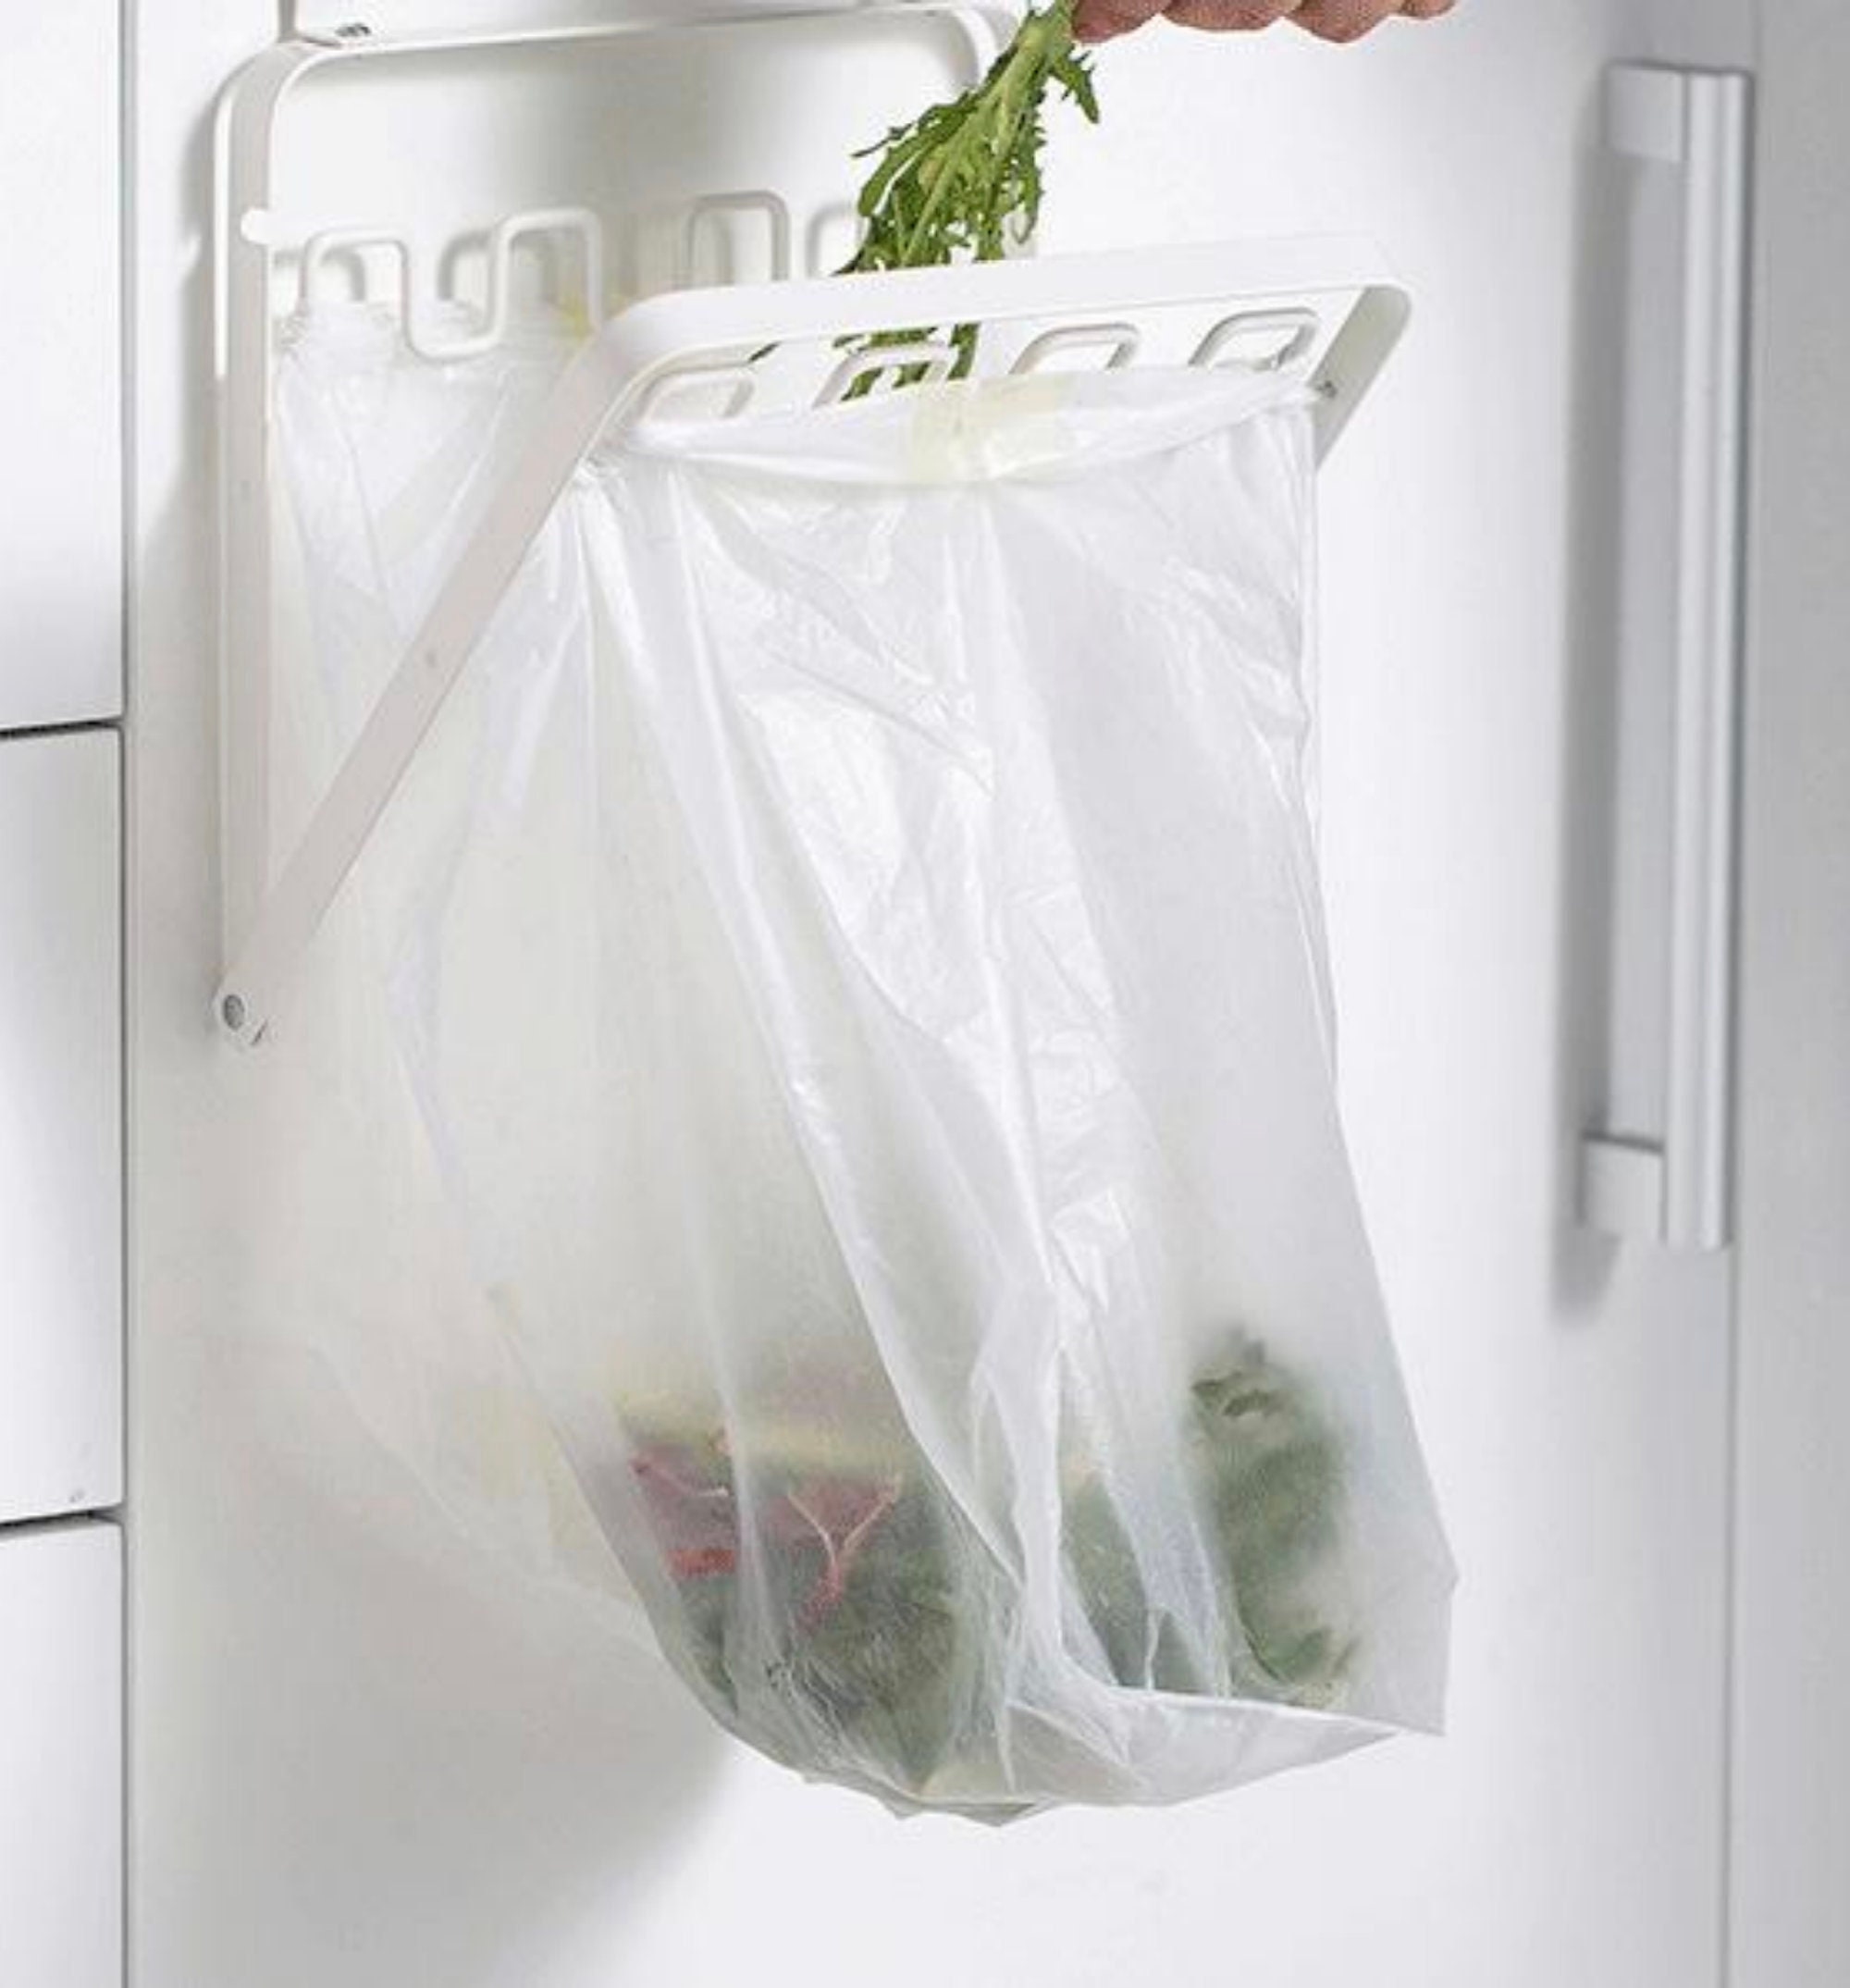 Trash & Plastic Grocery Bag Holder for garbage Storage, Cleanup & Events -  Bagez